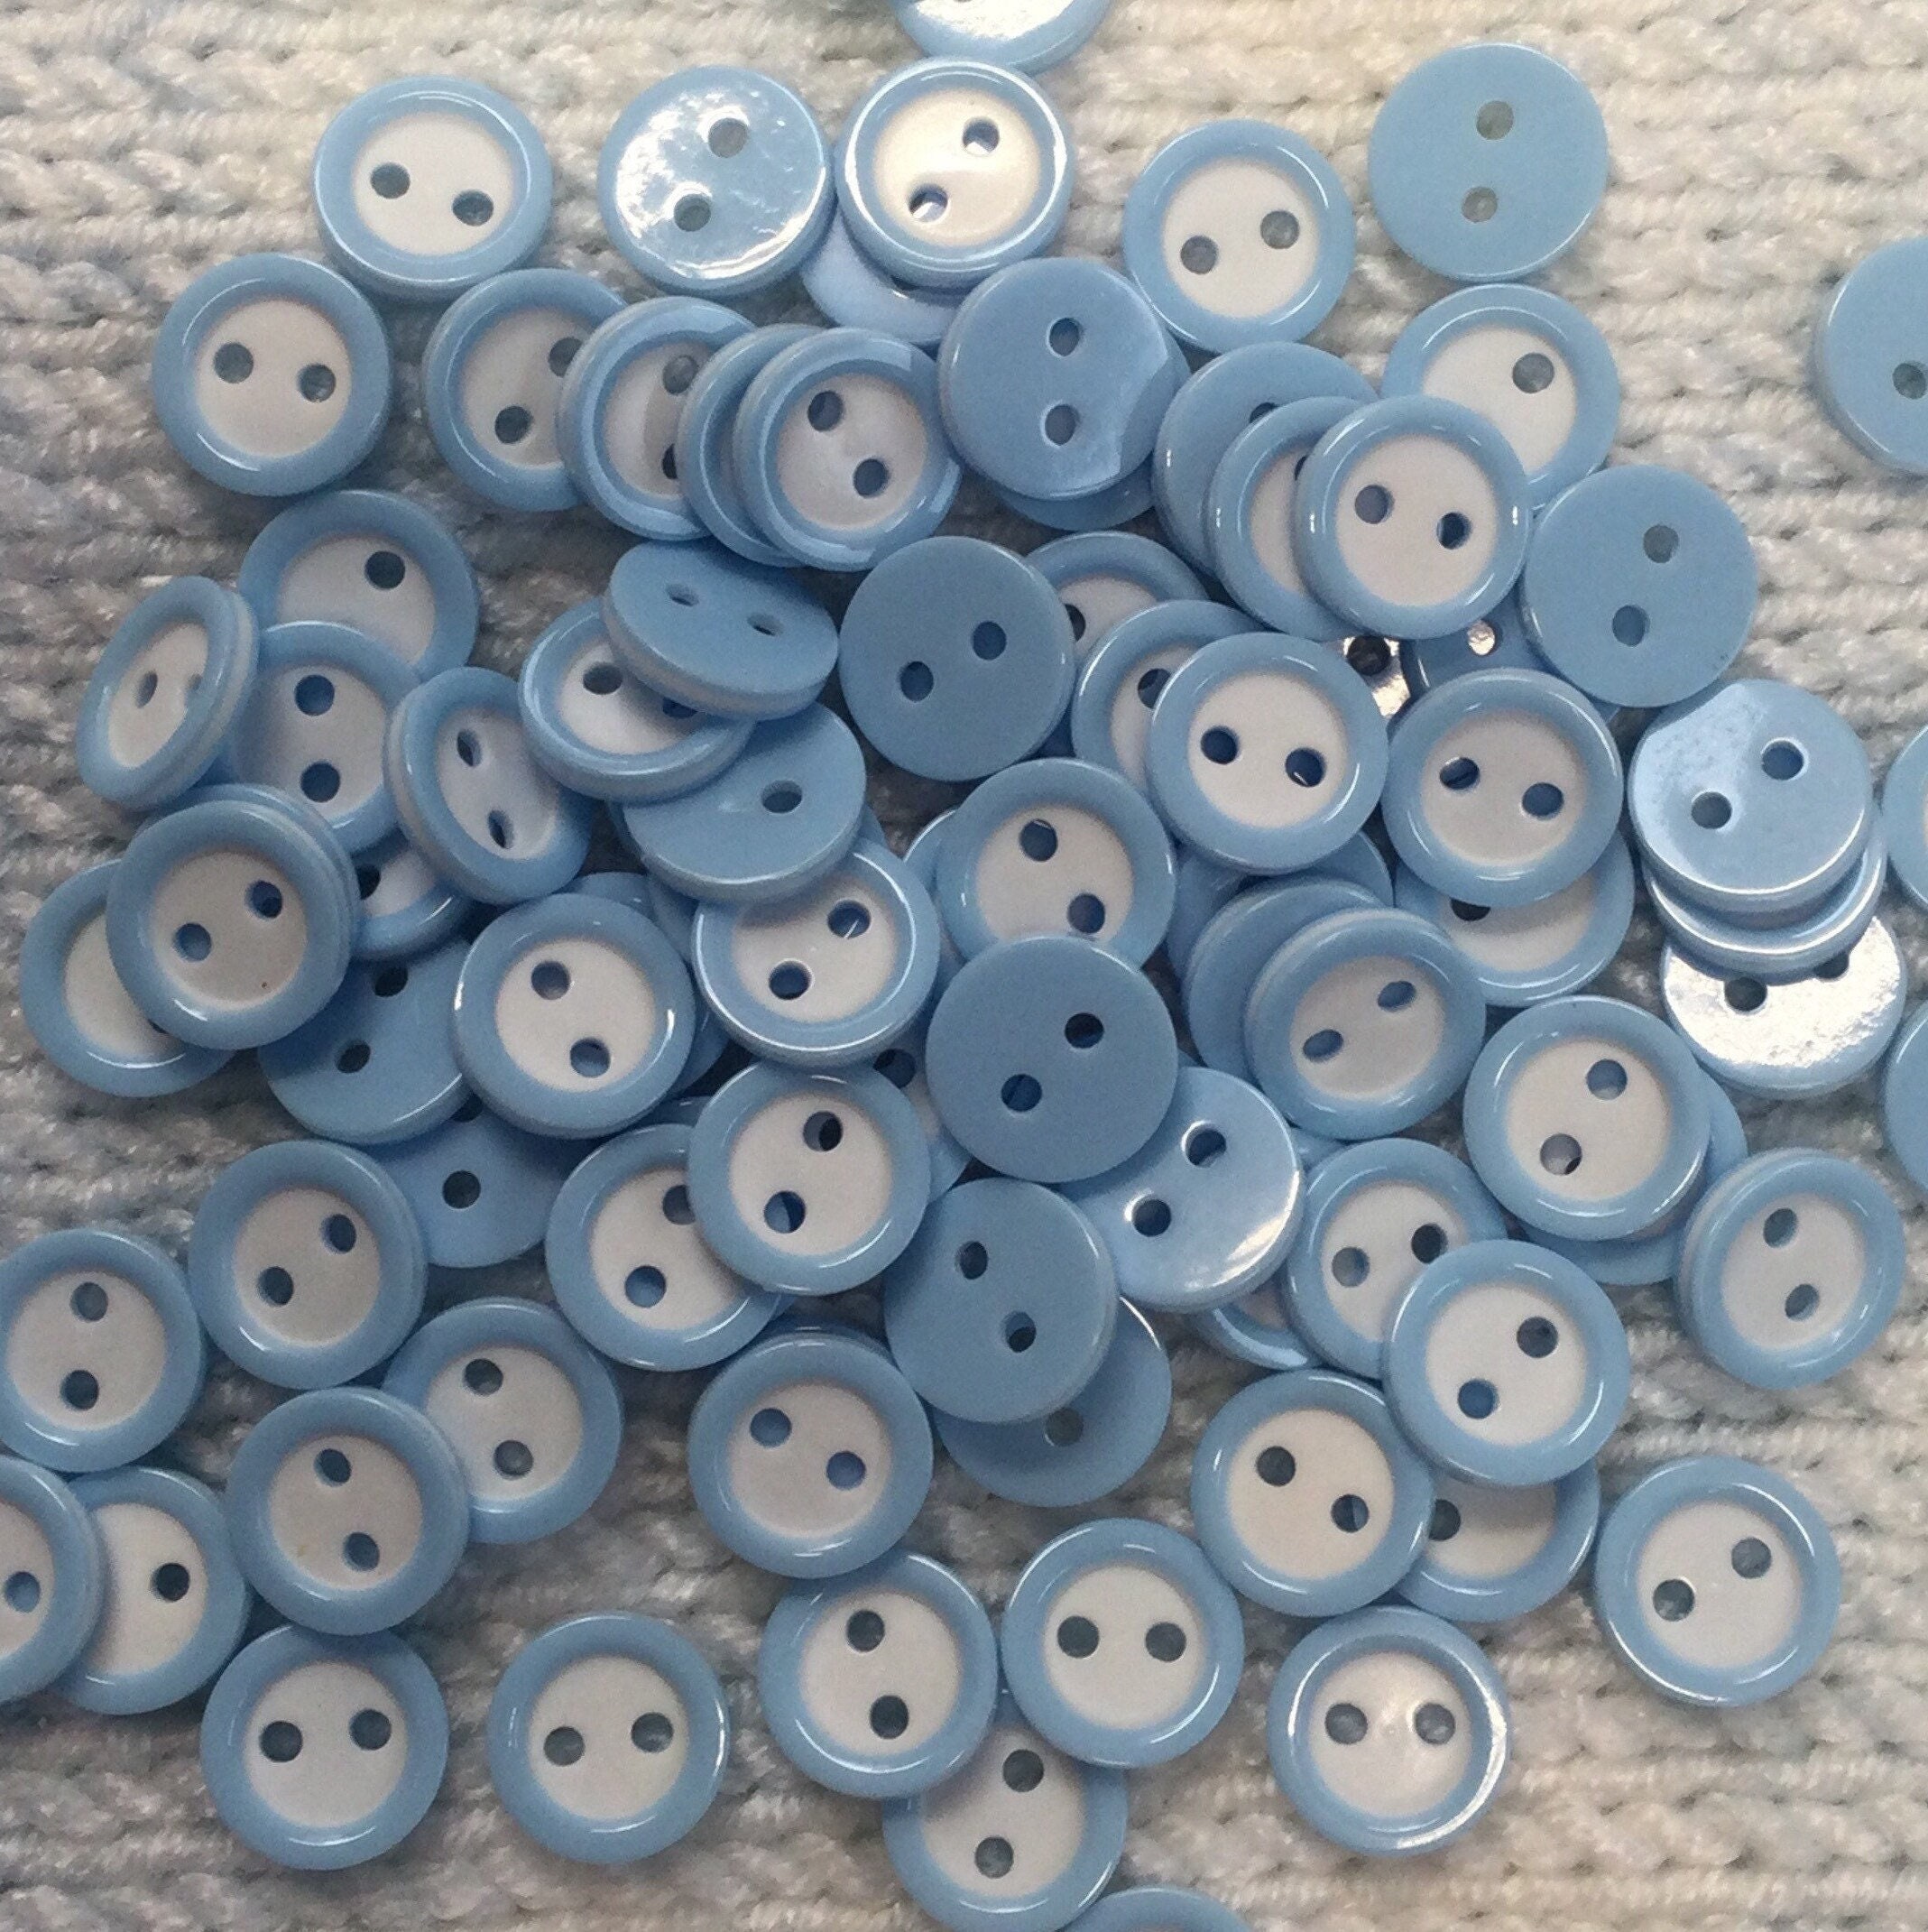 10 Blue Buttons, Baby Blue Buttons, 15mm Buttons, Blue Resin Buttons, Blue  Baby Buttons, Craft Buttons, Sewing Buttons, Light Blue Buttons 